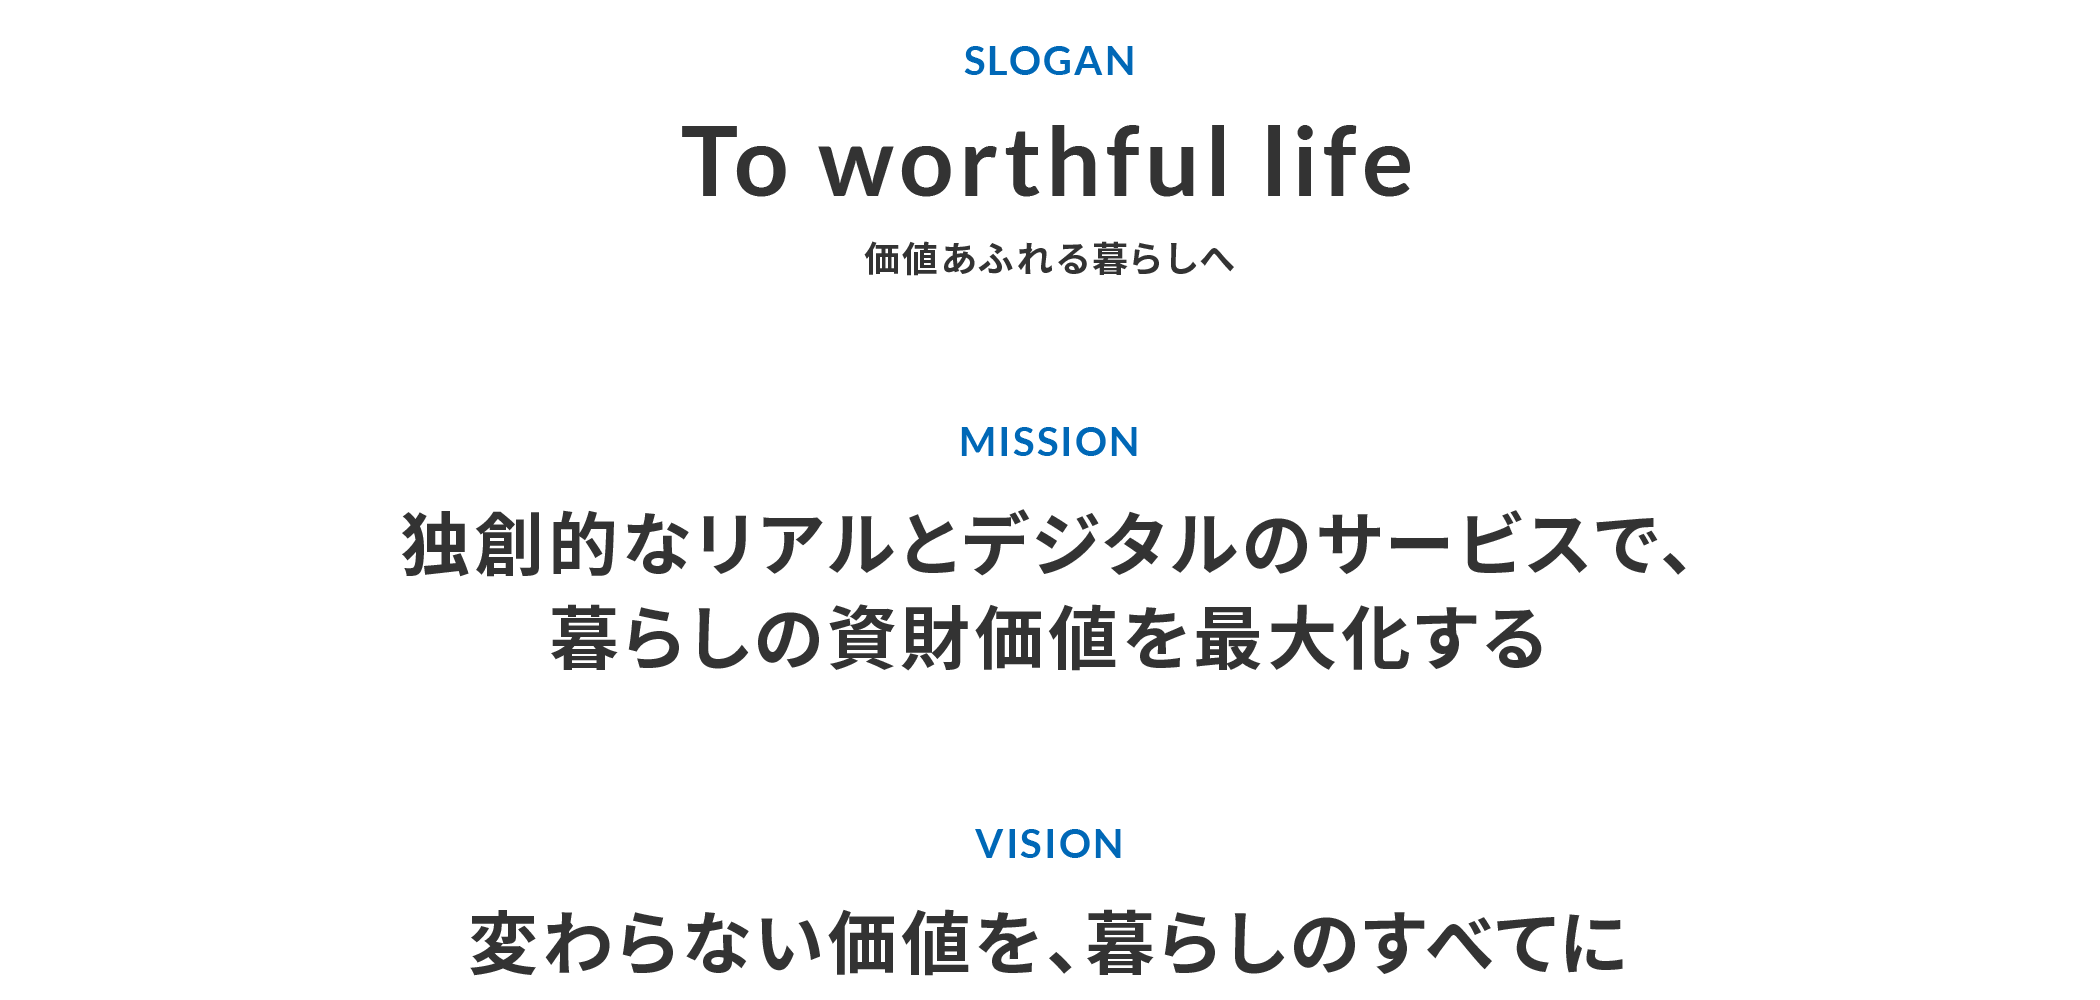 SLOGAN「To worthful life 価値あふれる暮らしへ」 MISSION「独創的なリアルとデジタルのサービスで、暮らしの資財価値を最大化する」 VISION「変わらない価値を、暮らしのすべてに」